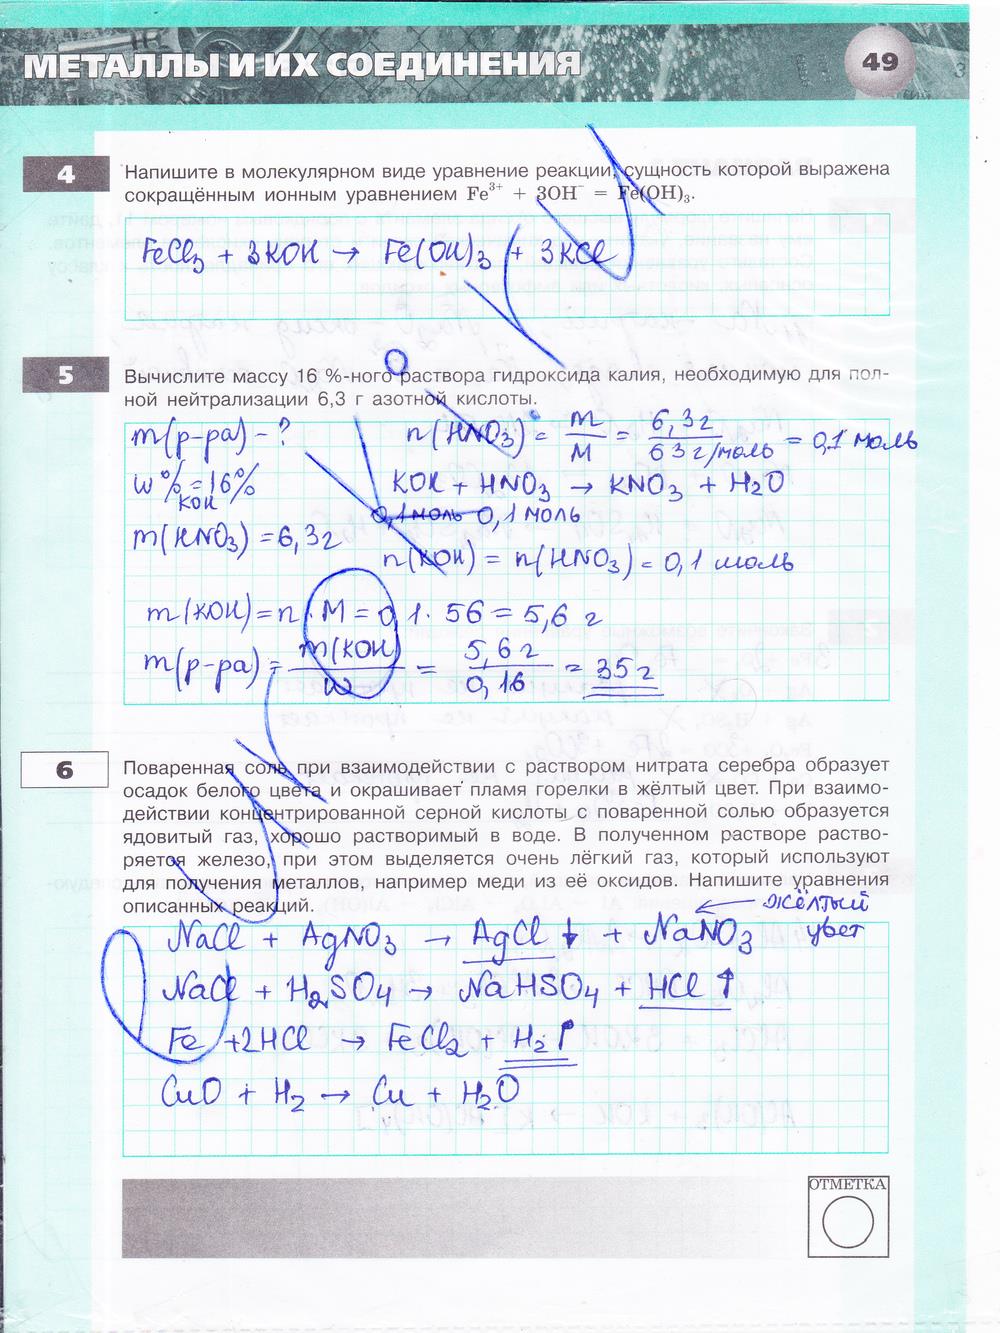 гдз 9 класс тетрадь-экзаменатор страница 49 химия Бобылева, Бирюлина